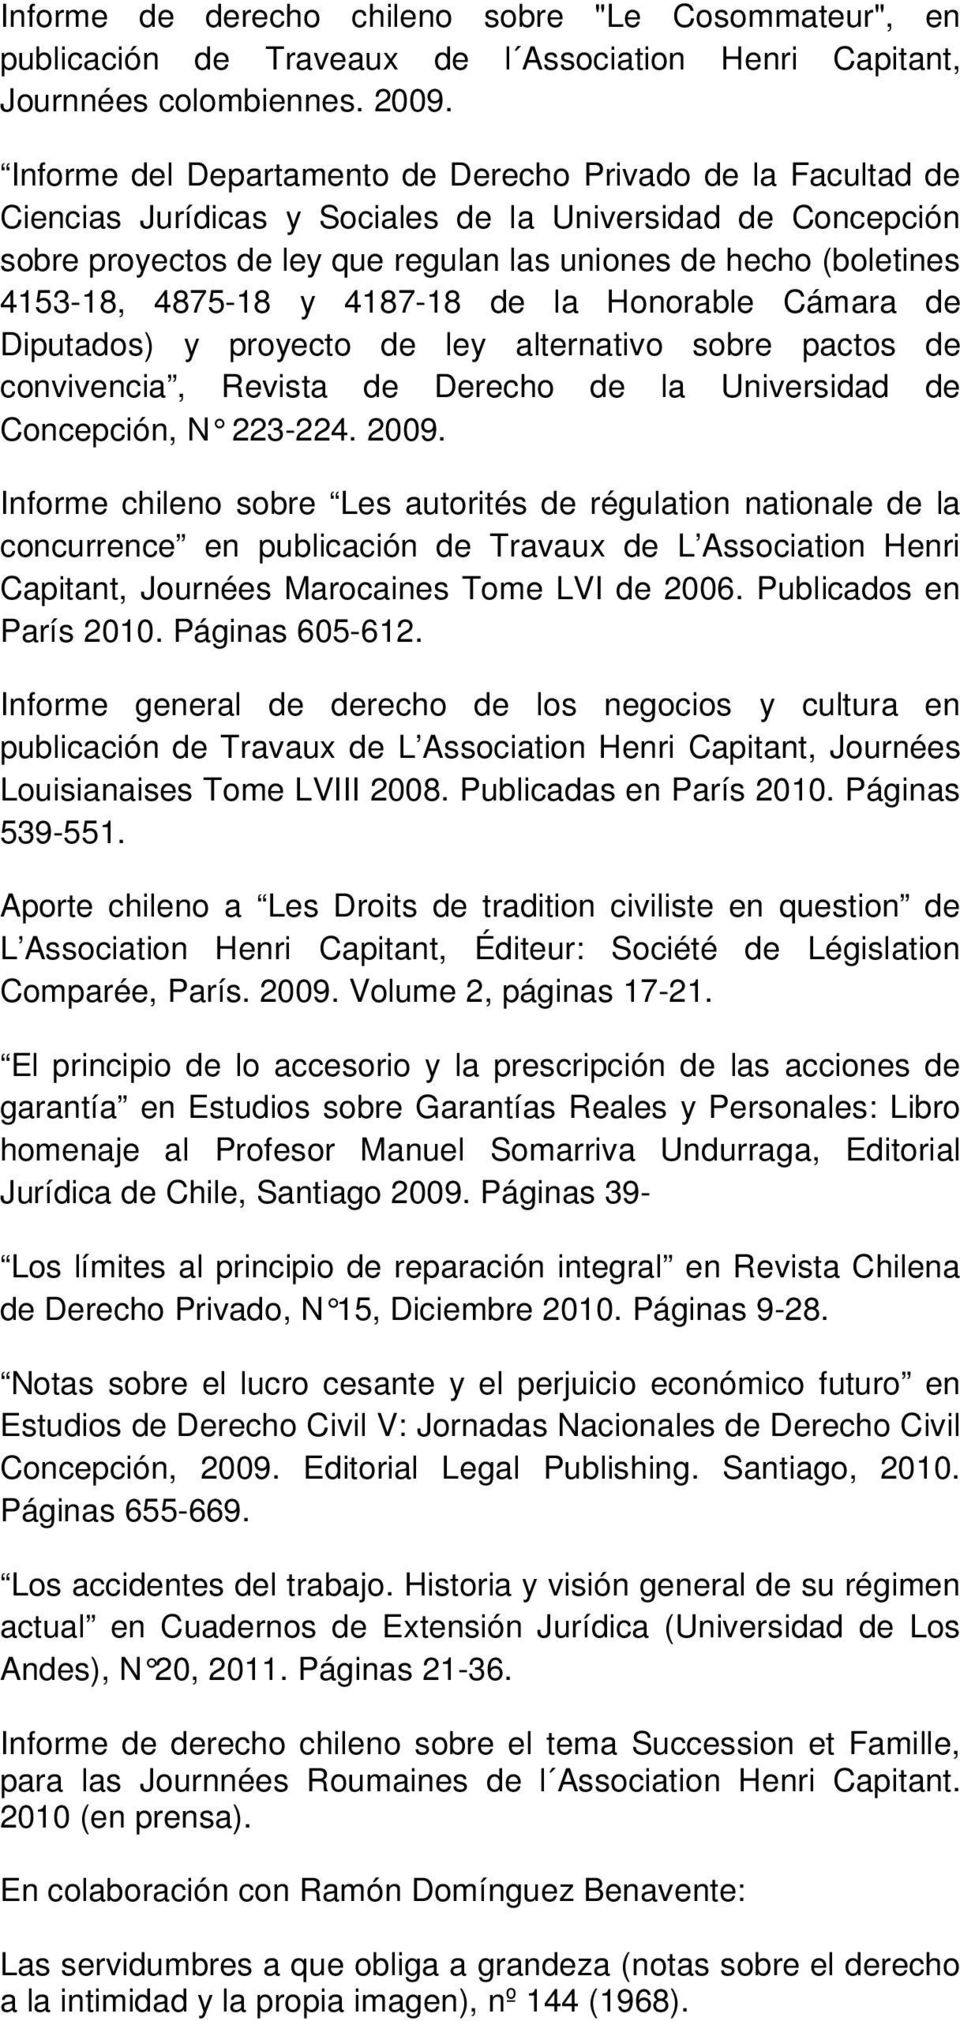 4875-18 y 4187-18 de la Honorable Cámara de Diputados) y proyecto de ley alternativo sobre pactos de convivencia, Revista de Derecho de la Universidad de Concepción, N 223-224. 2009.